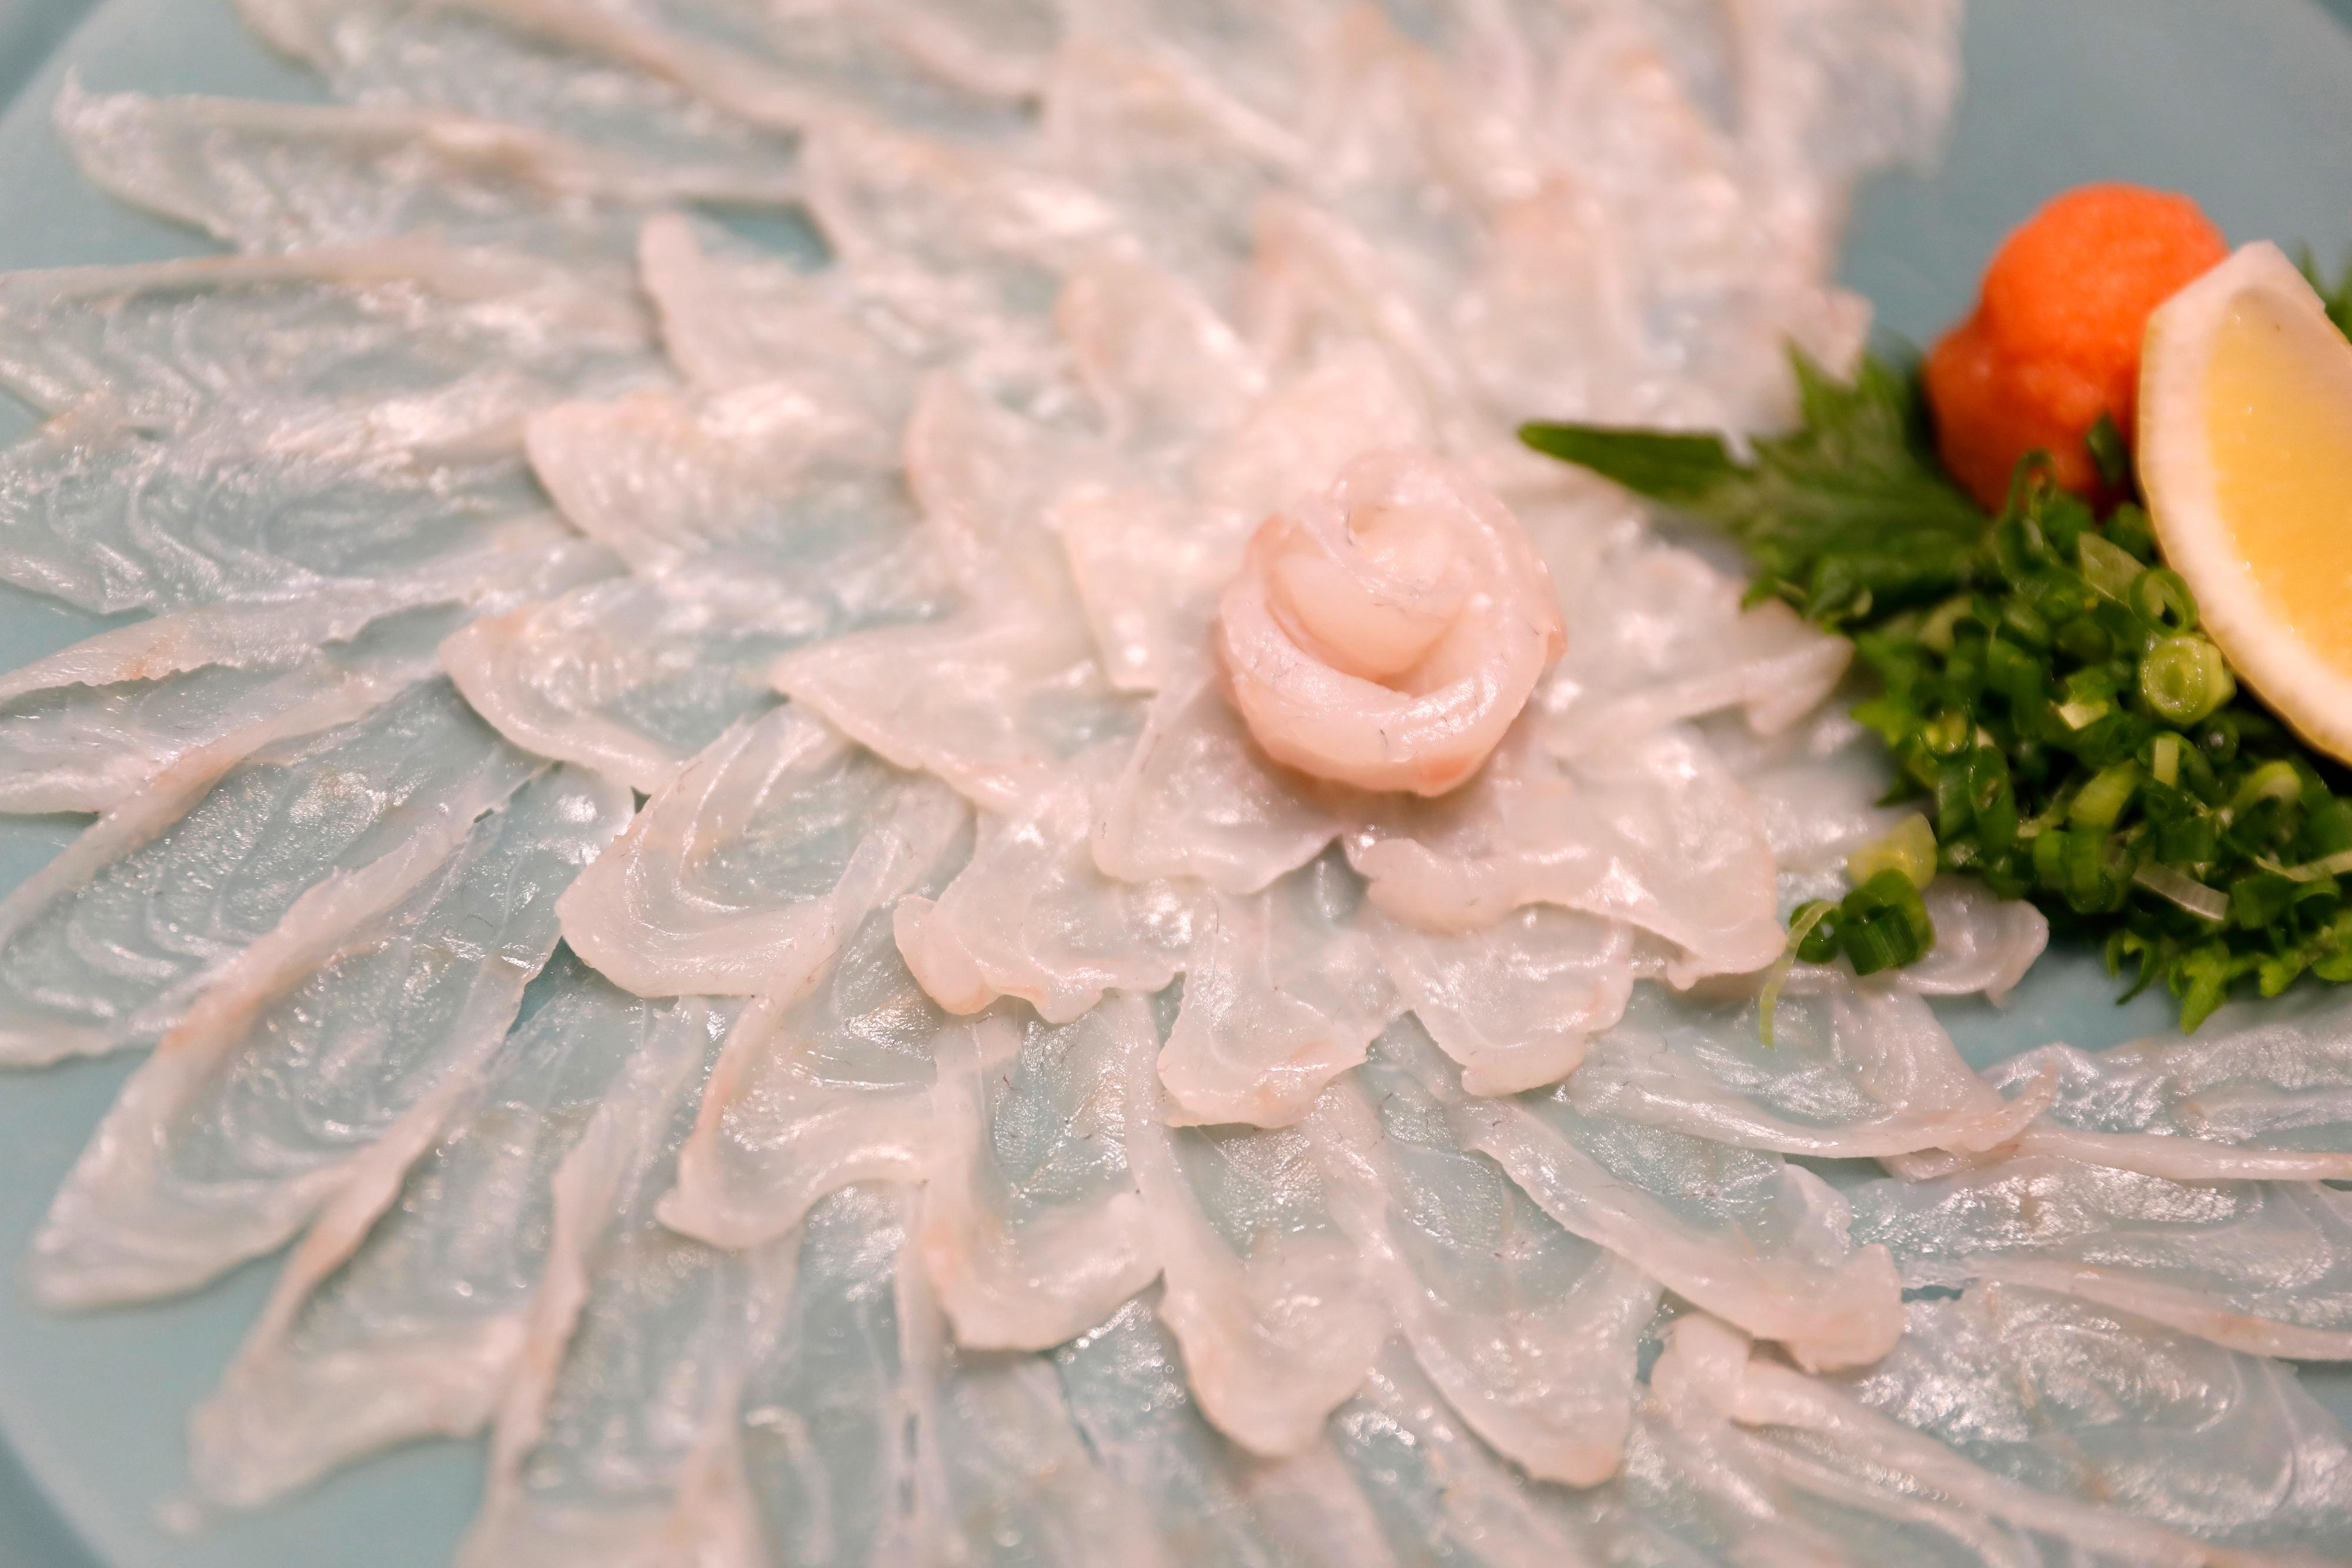 LUKSUS: Eksklusive fugu-retter kan koste opptil 30 000 yen, ifølge Byfood.com. Det tilsvarer over 2000 norske kroner. 